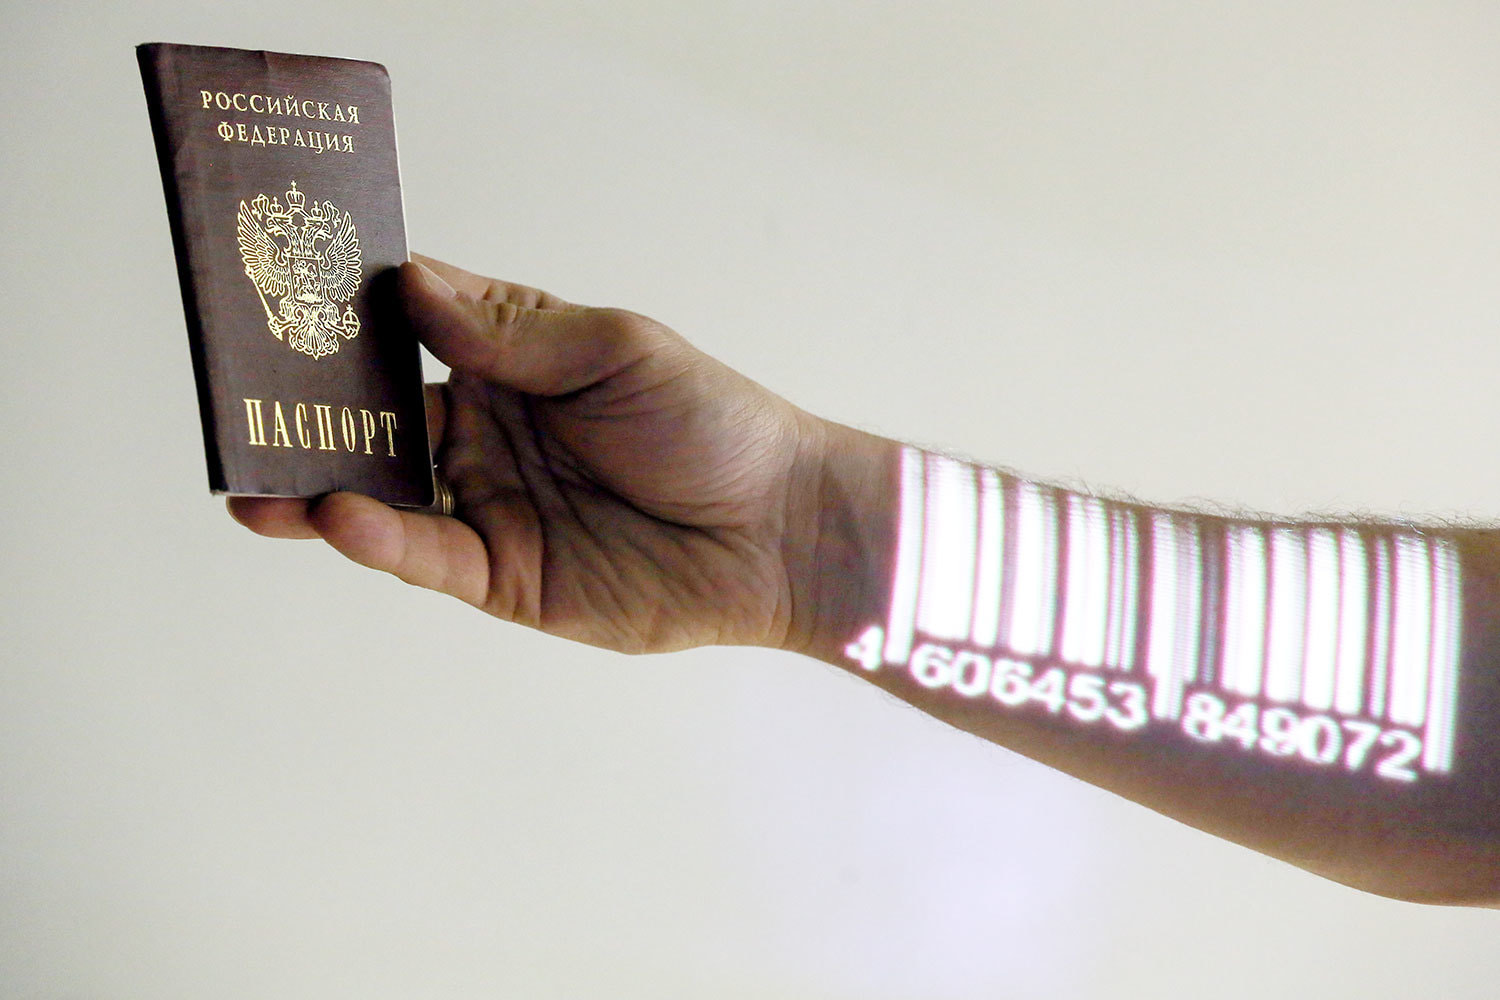 Электронные паспорта как путь к виртуальному господству